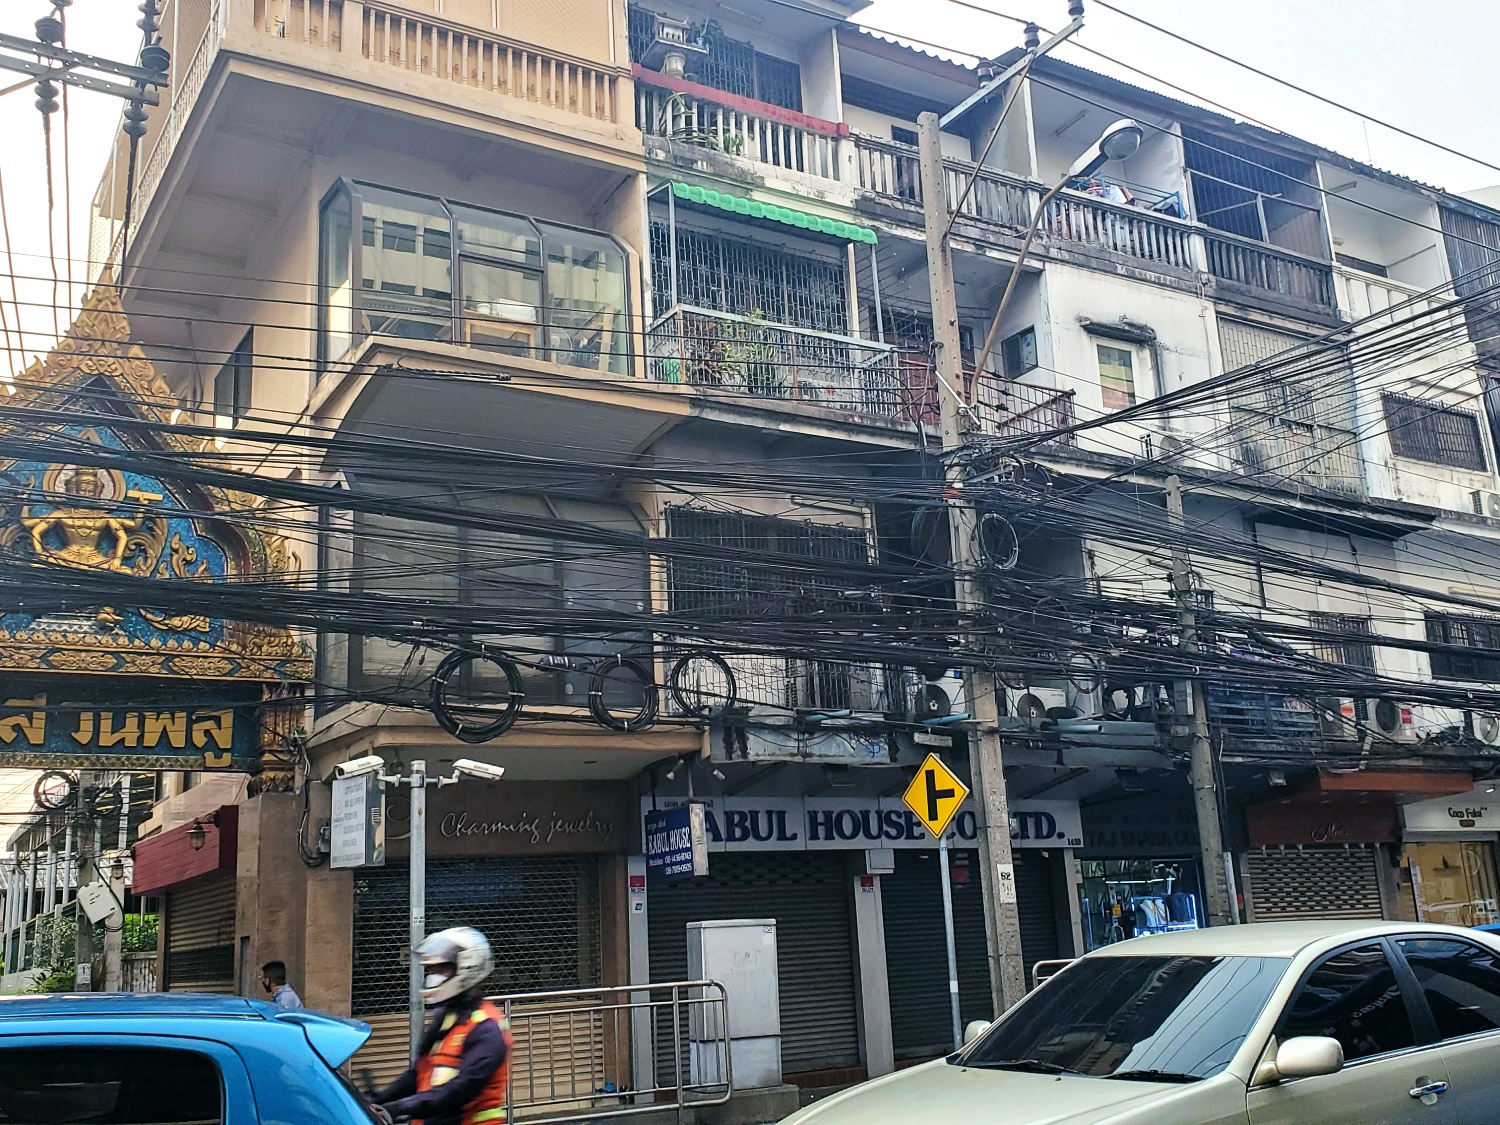 Bangkok streets